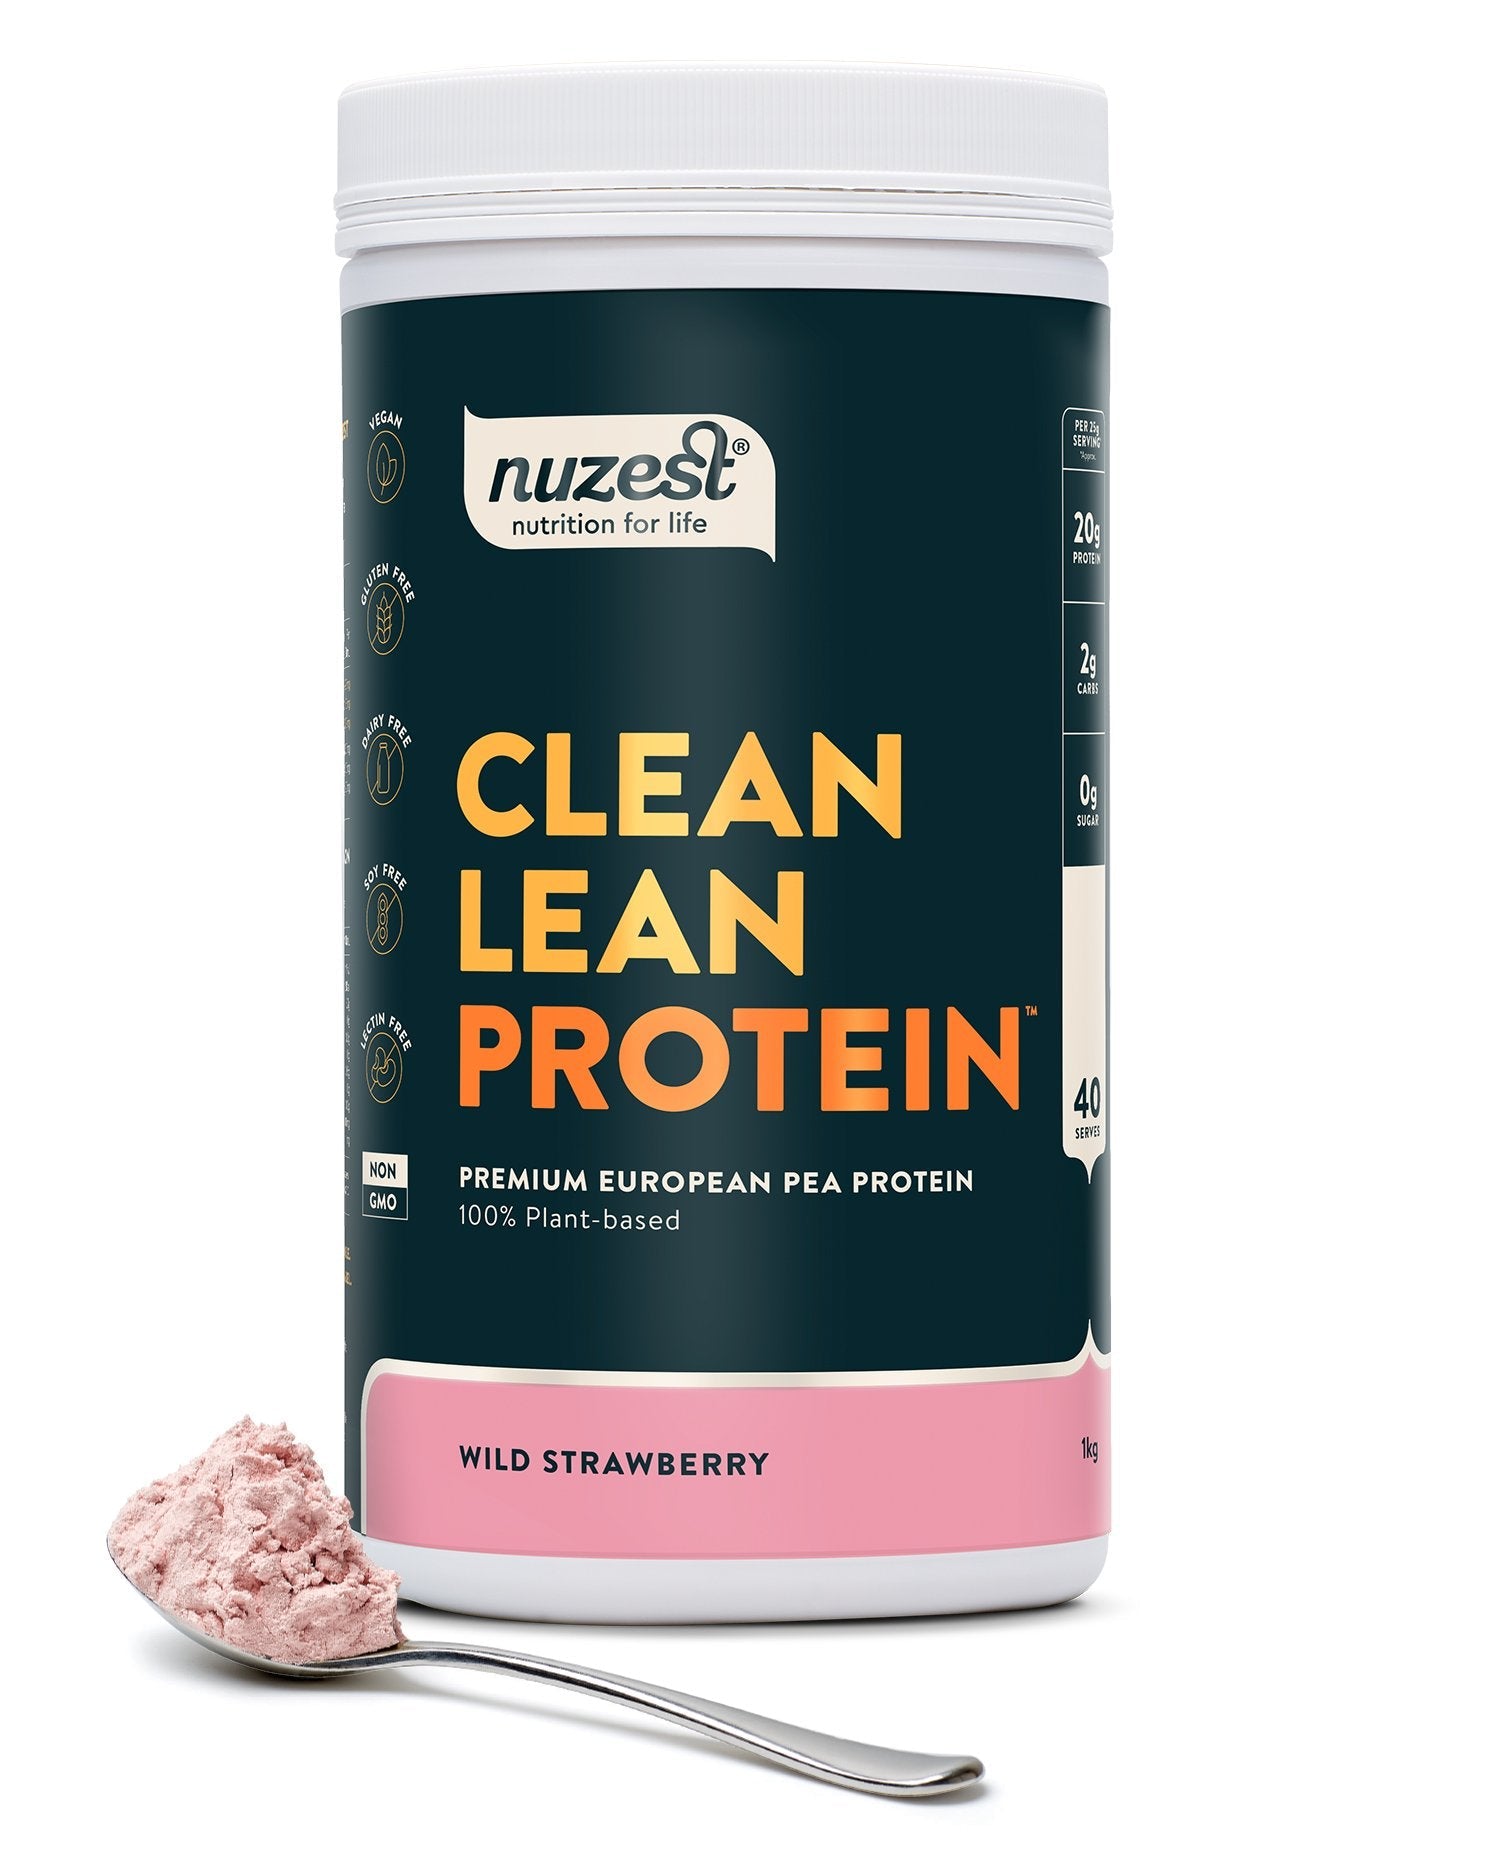 Nuzest Clean Lean Protein - Super Nutrition